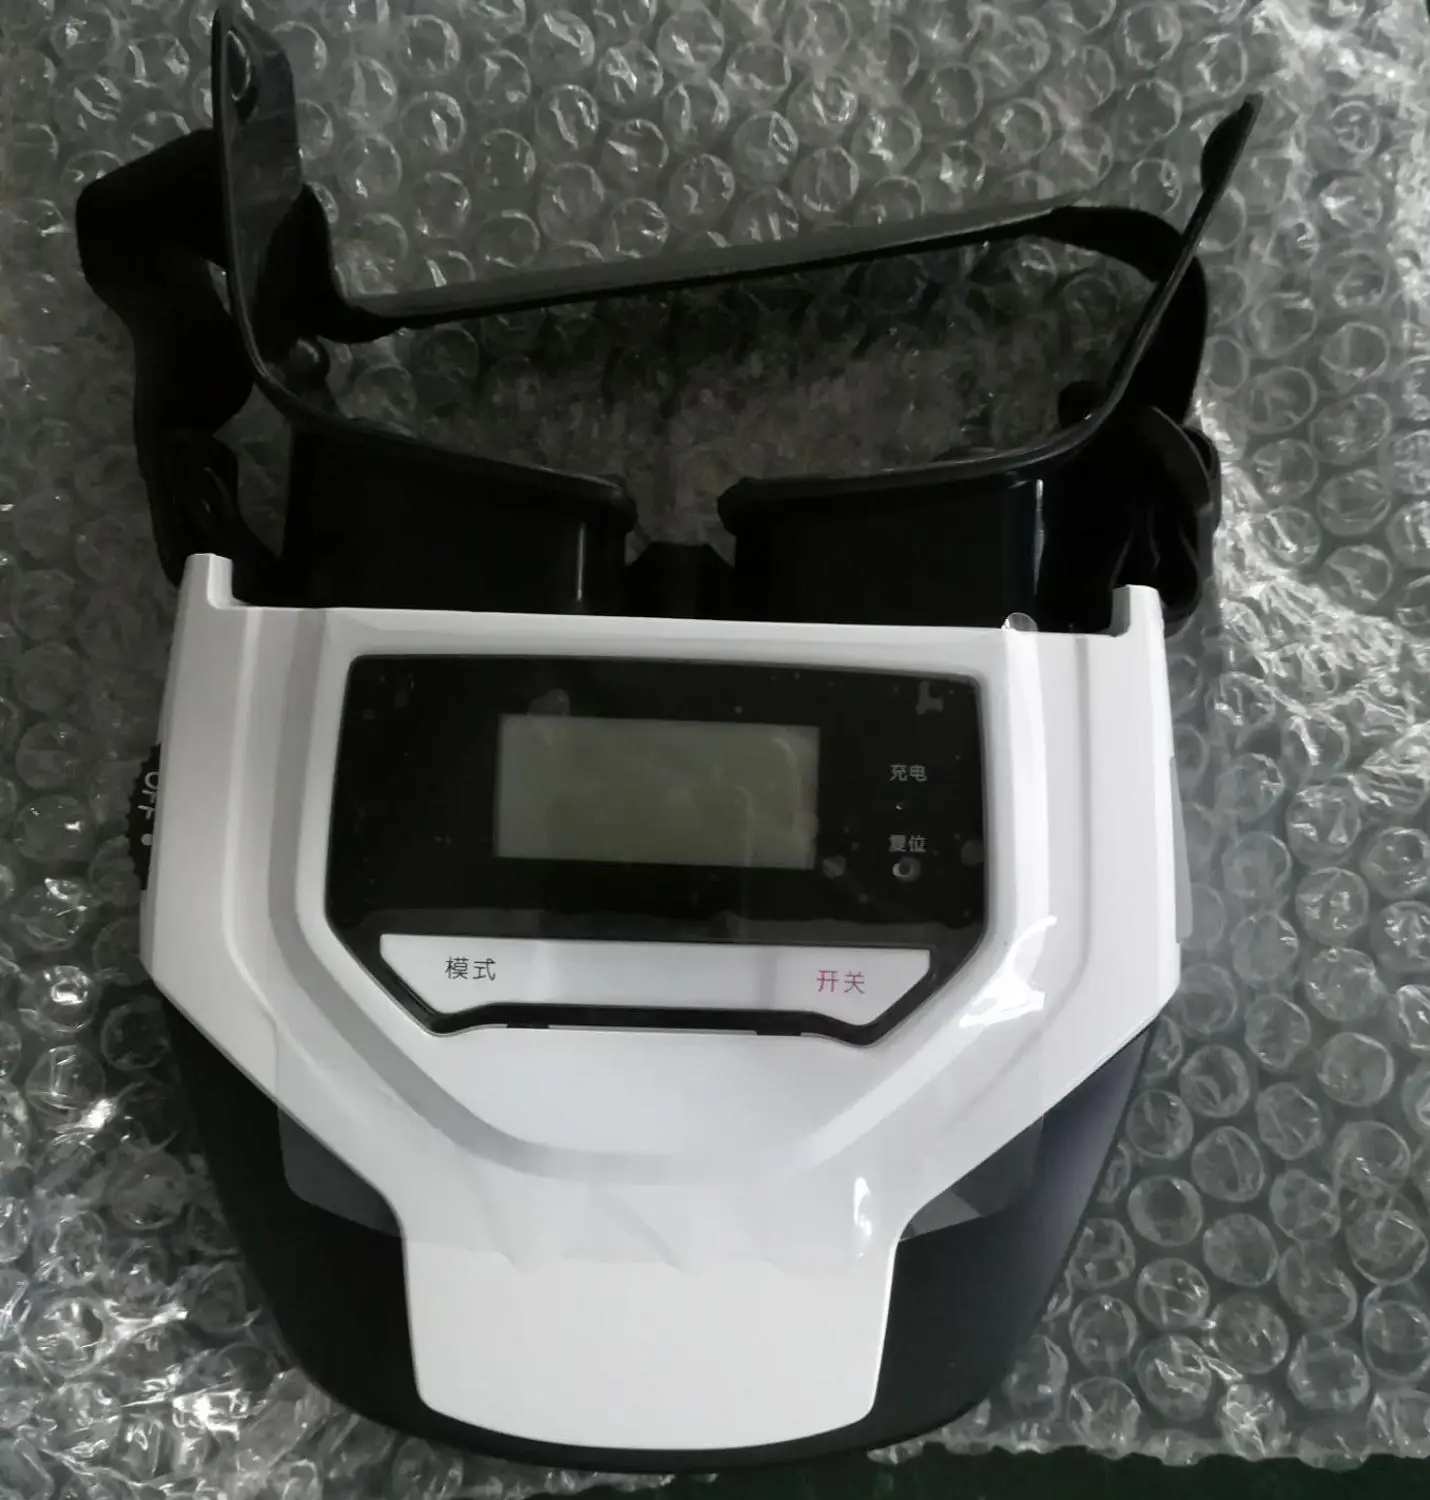 Поколение II встроенный аккумулятор 3D Визуальный тренировка акупунктурный лазер голубой глаз Массажер Расслабляющий массажер - Цвет: Черный